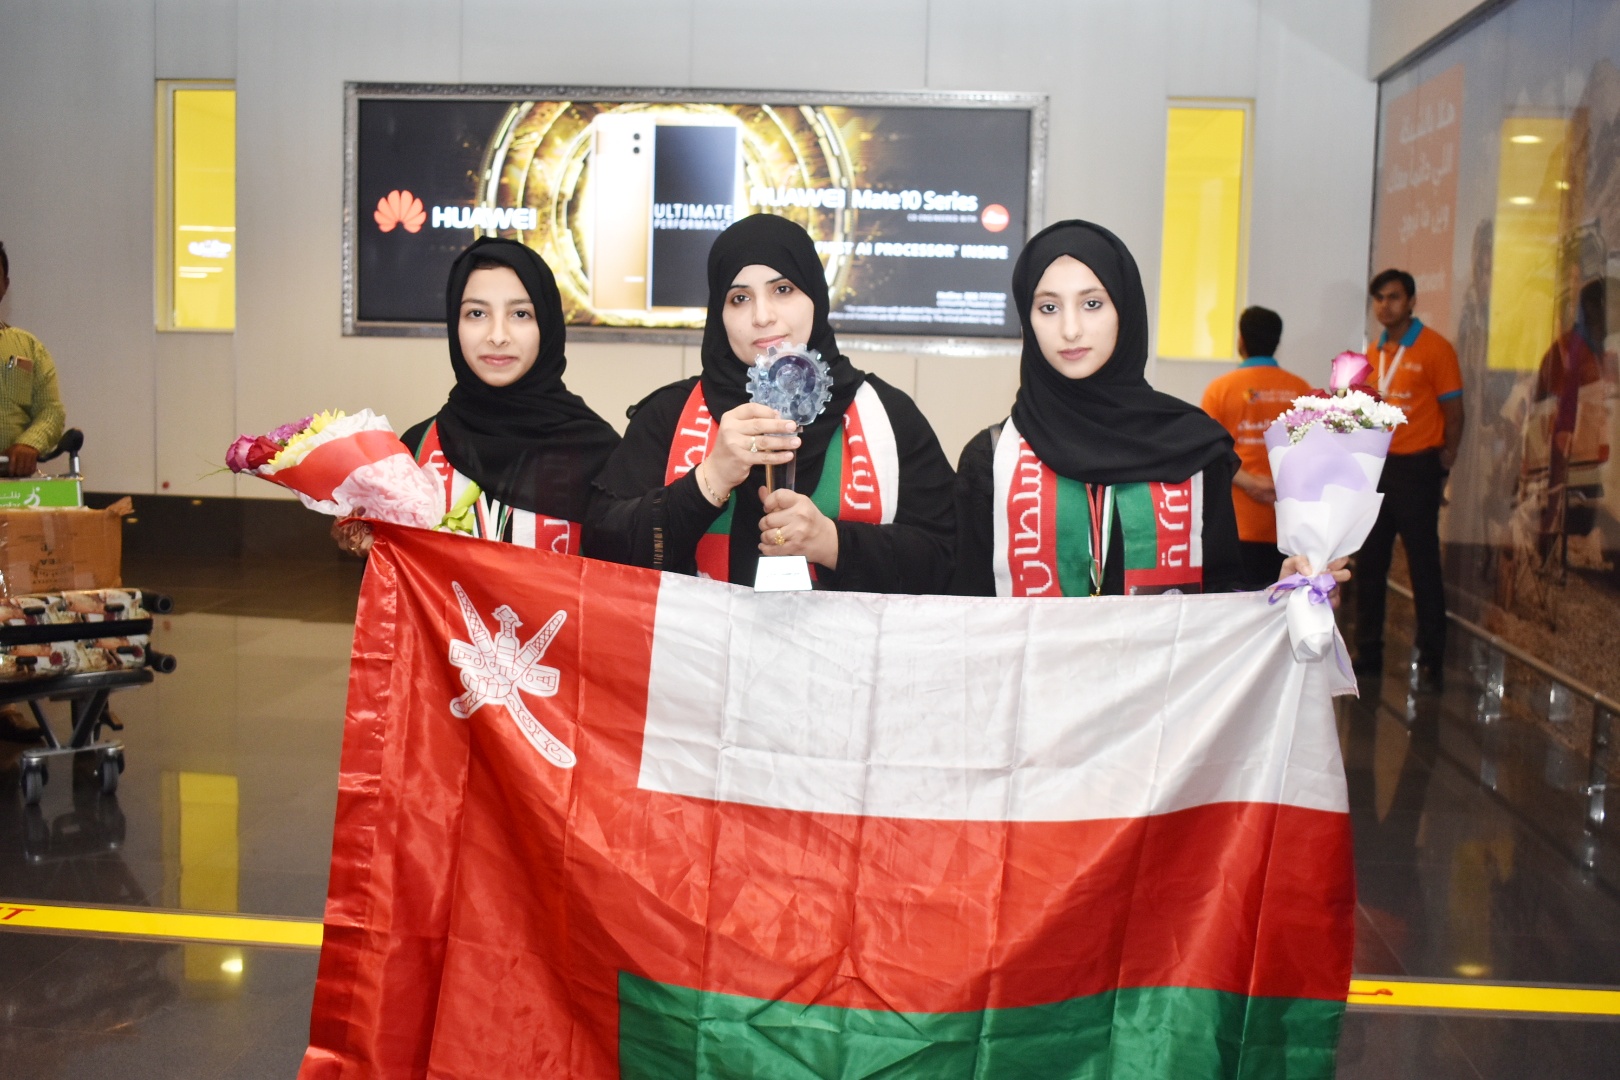 عُمانيات يحصلن على المركز الأول في مسابقة "ابتكار الكويت العلمية"